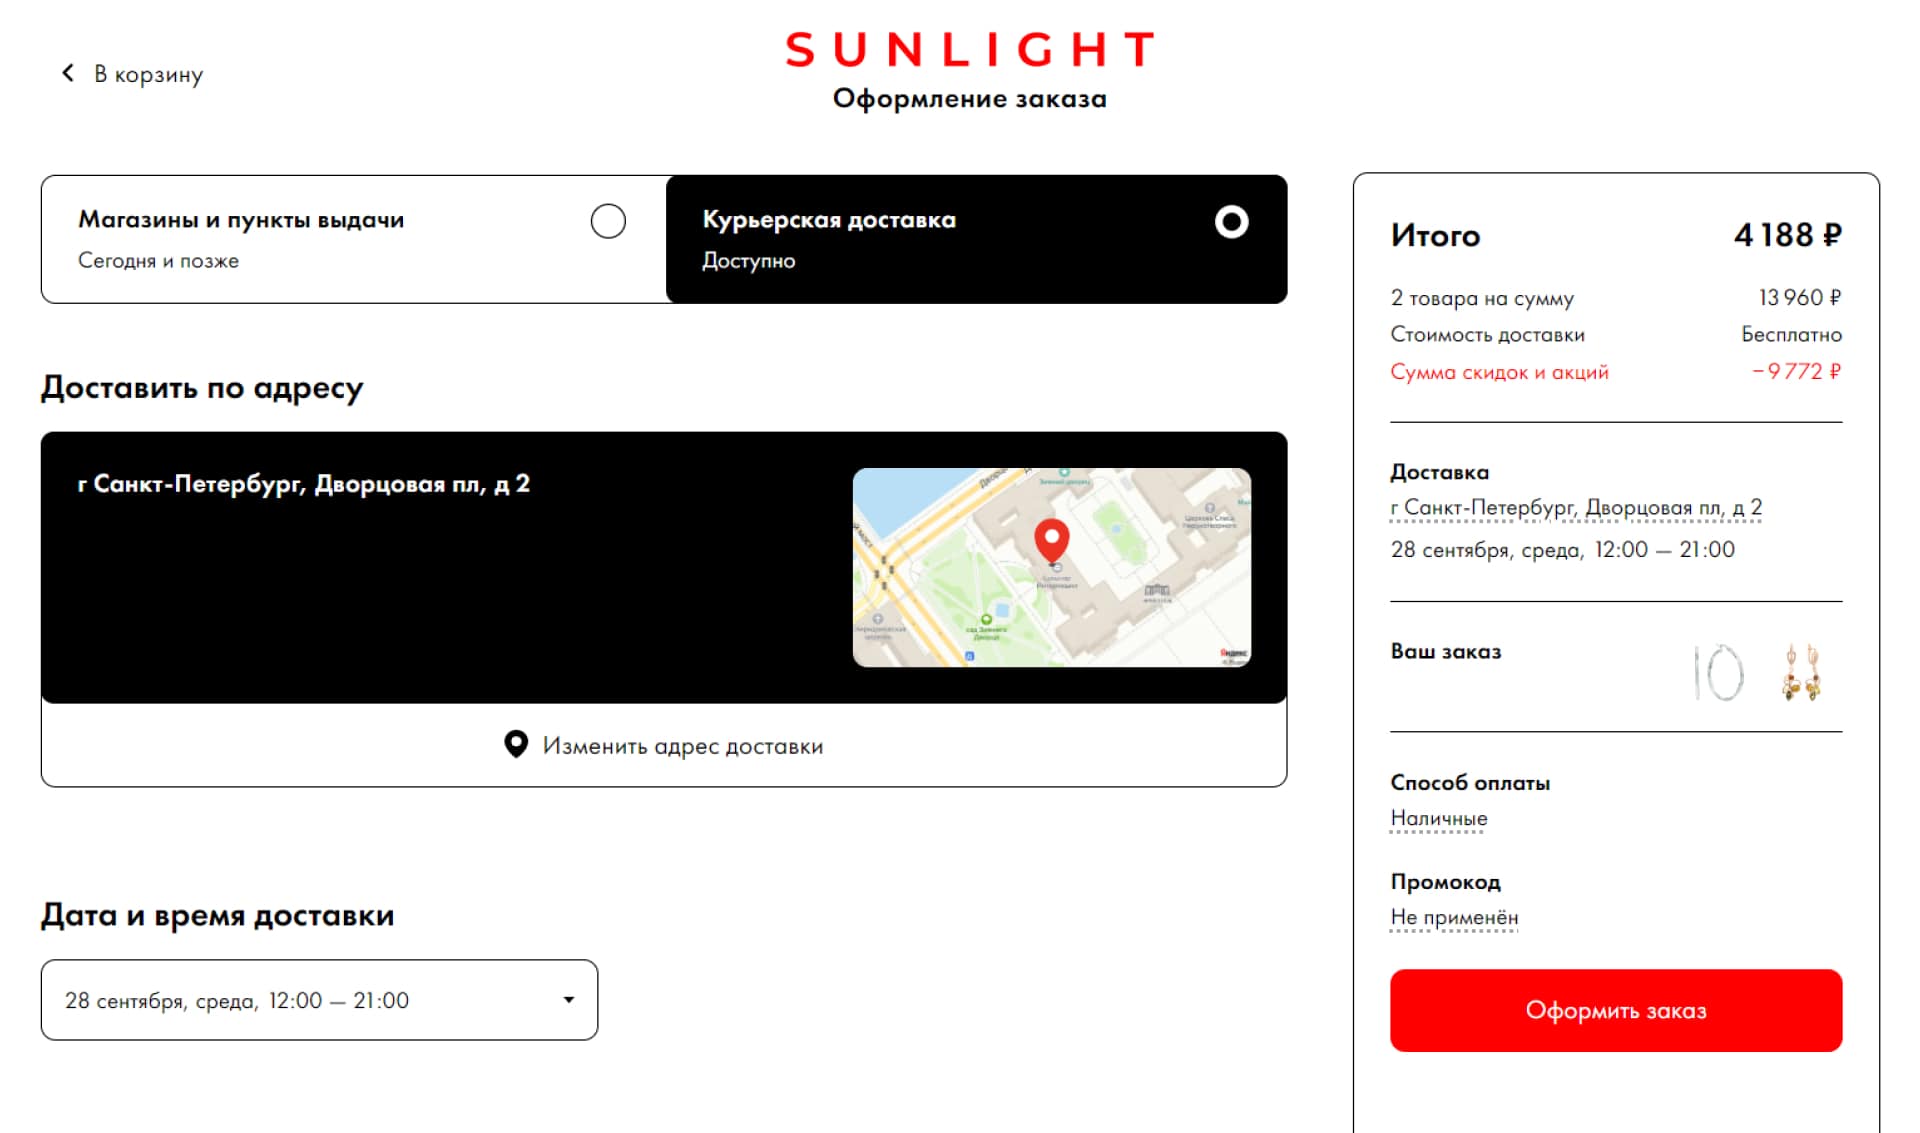 Ювелирный магазин Sunlight отображает на странице заказа условия заказа, дату и адрес доставки, цену и фотографии выбранных товаров